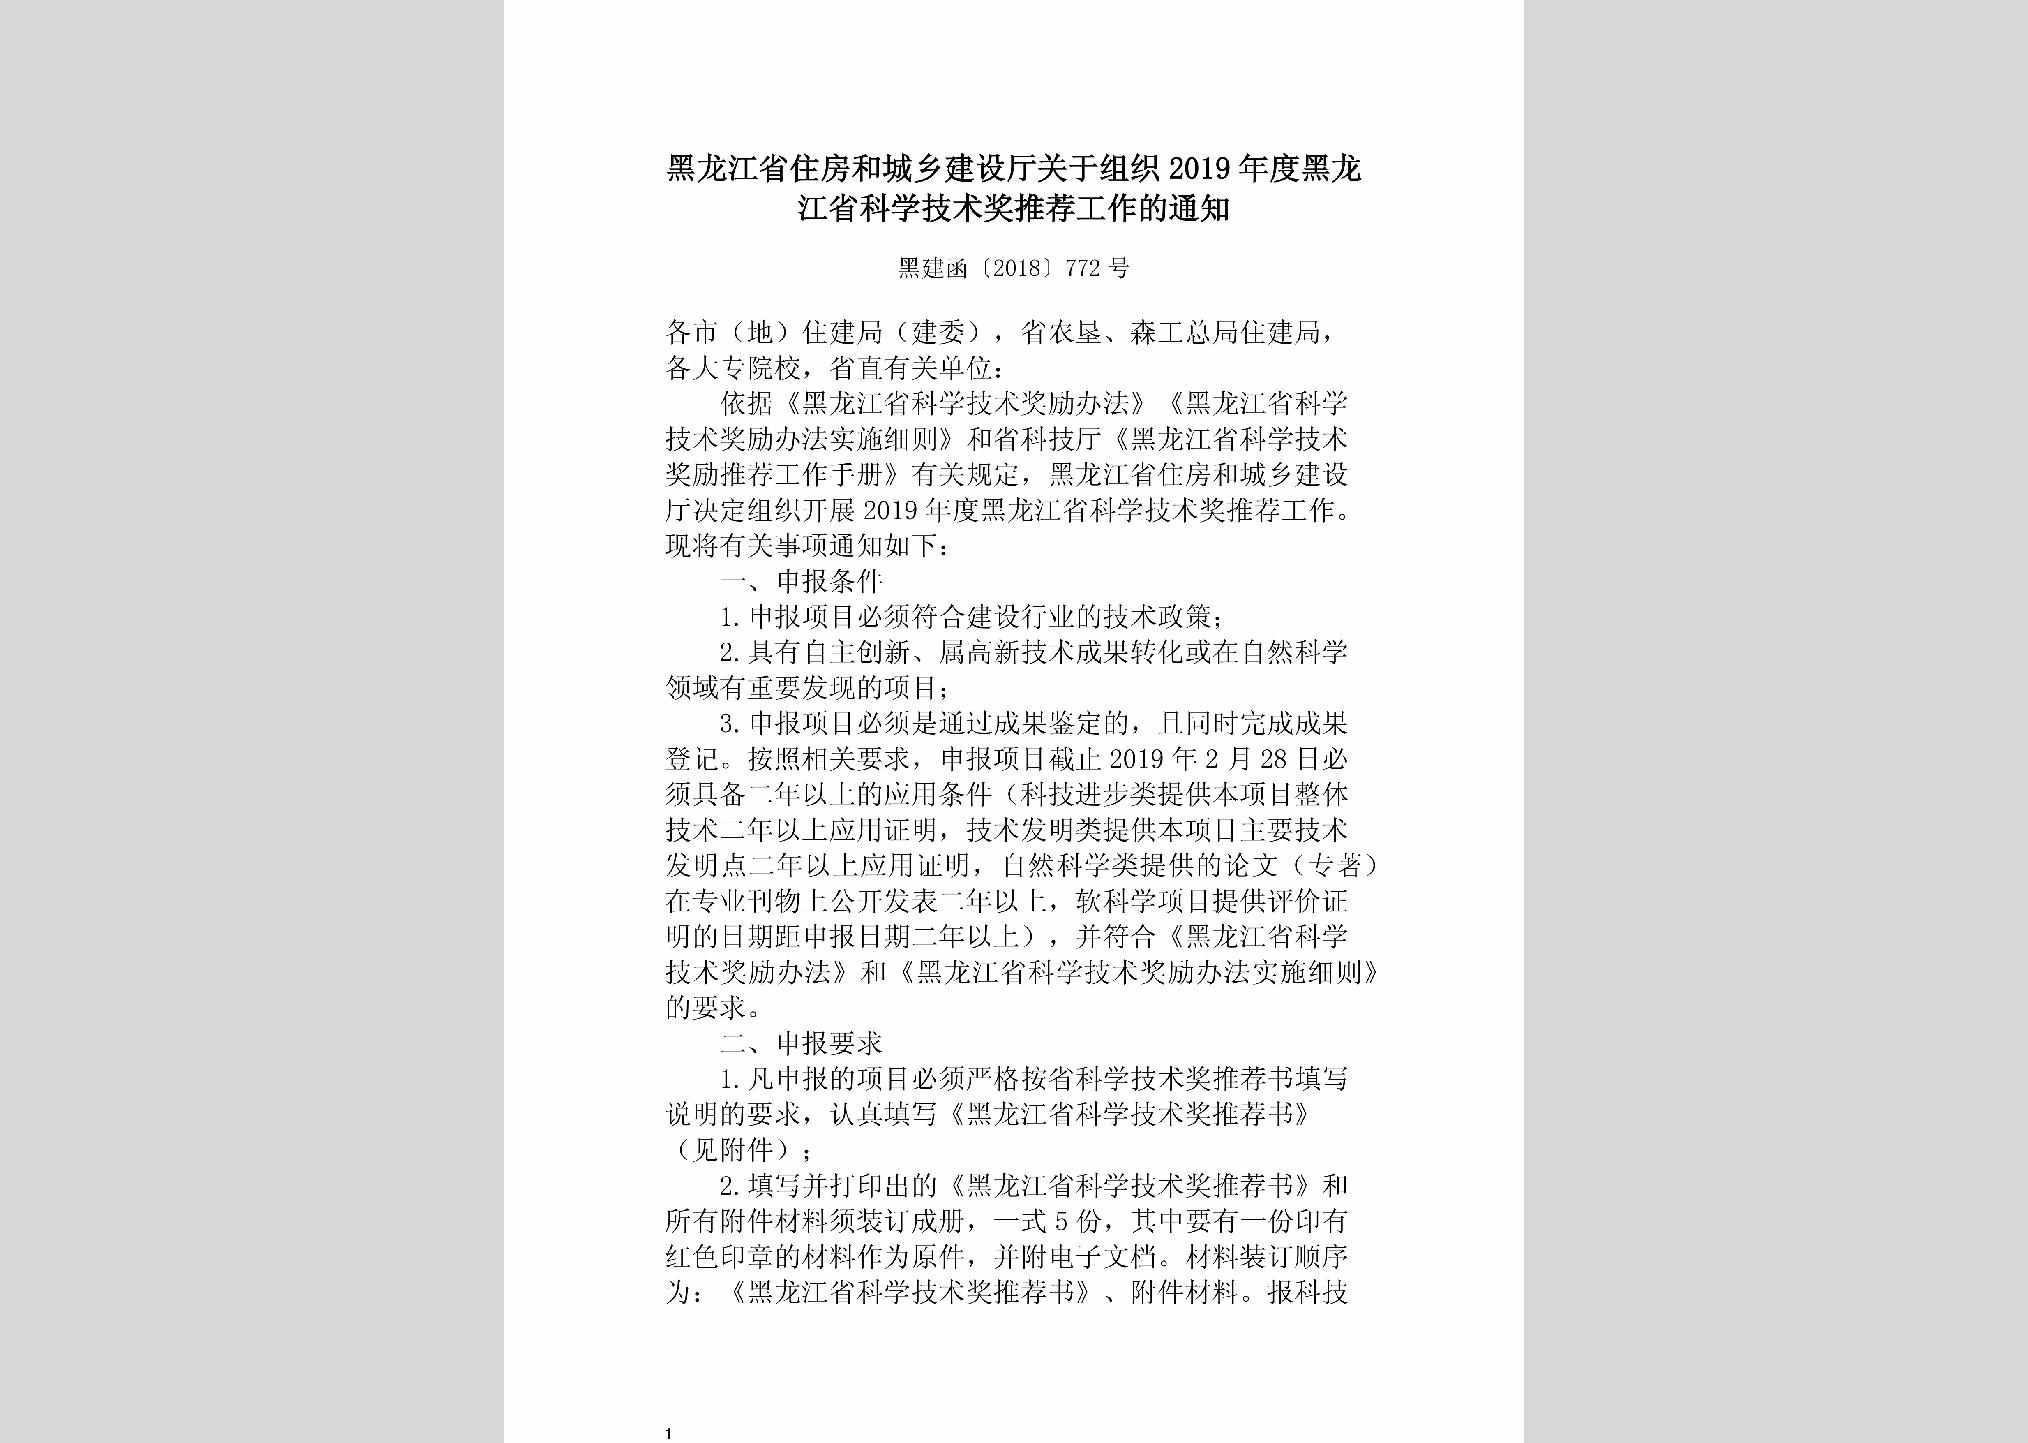 黑建函[2018]772号：黑龙江省住房和城乡建设厅关于组织2019年度黑龙江省科学技术奖推荐工作的通知